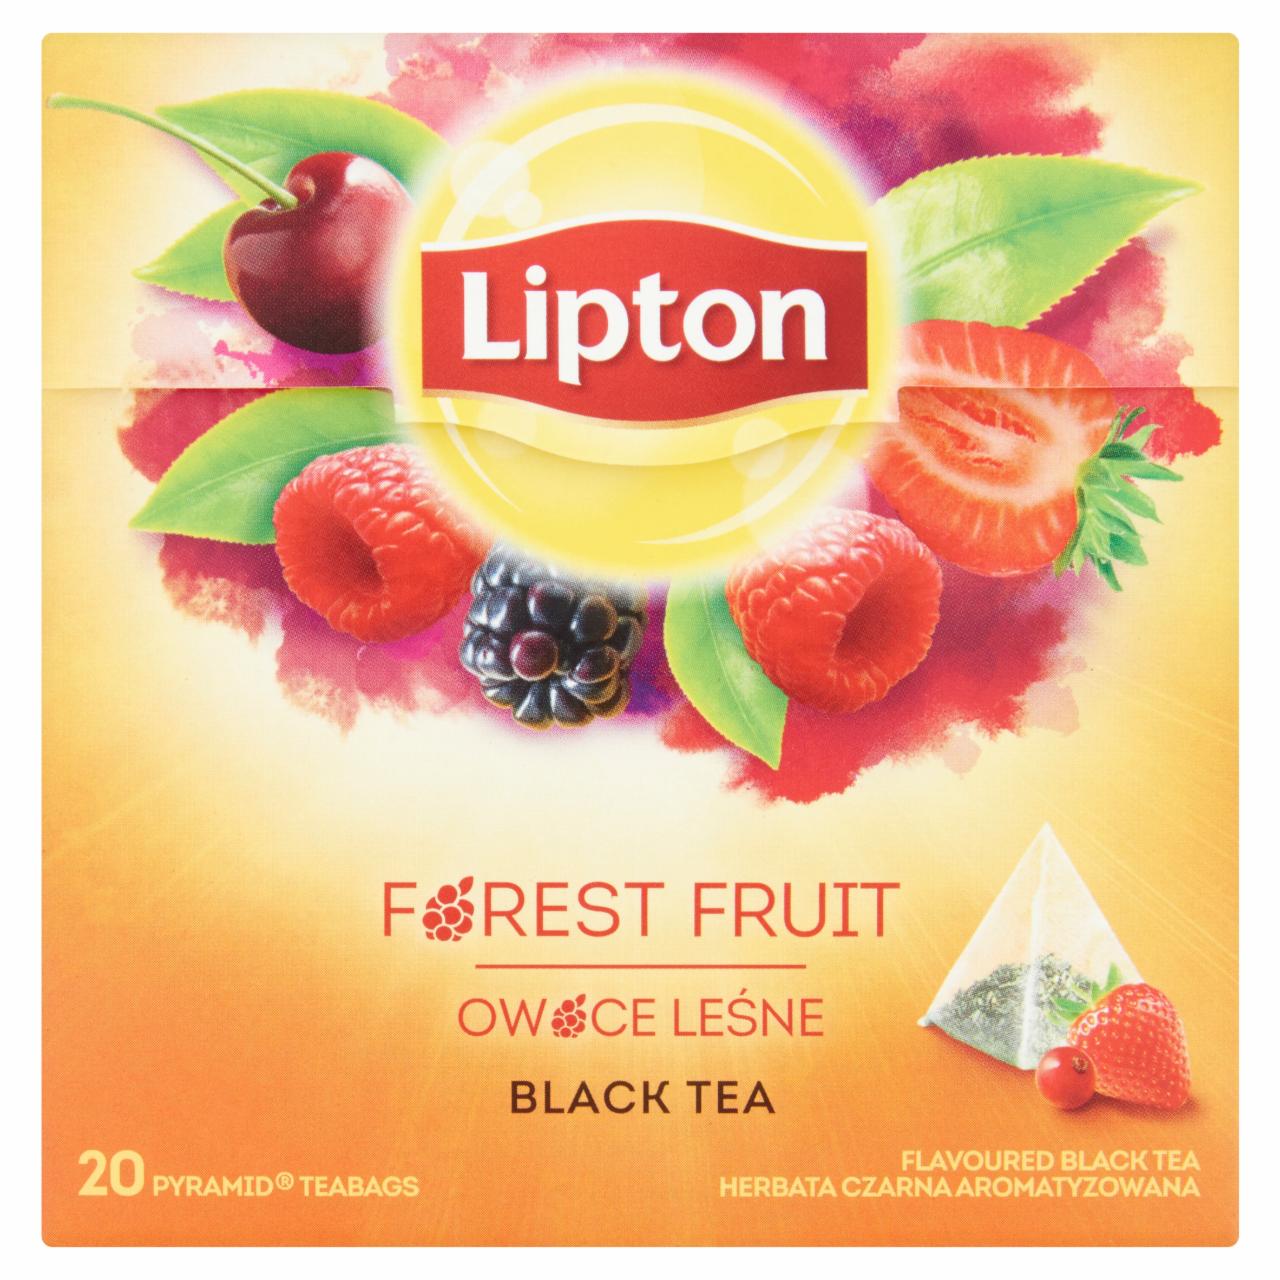 Képek - Lipton erdei gyümölcs ízű fekete tea 20 piramis teafilter